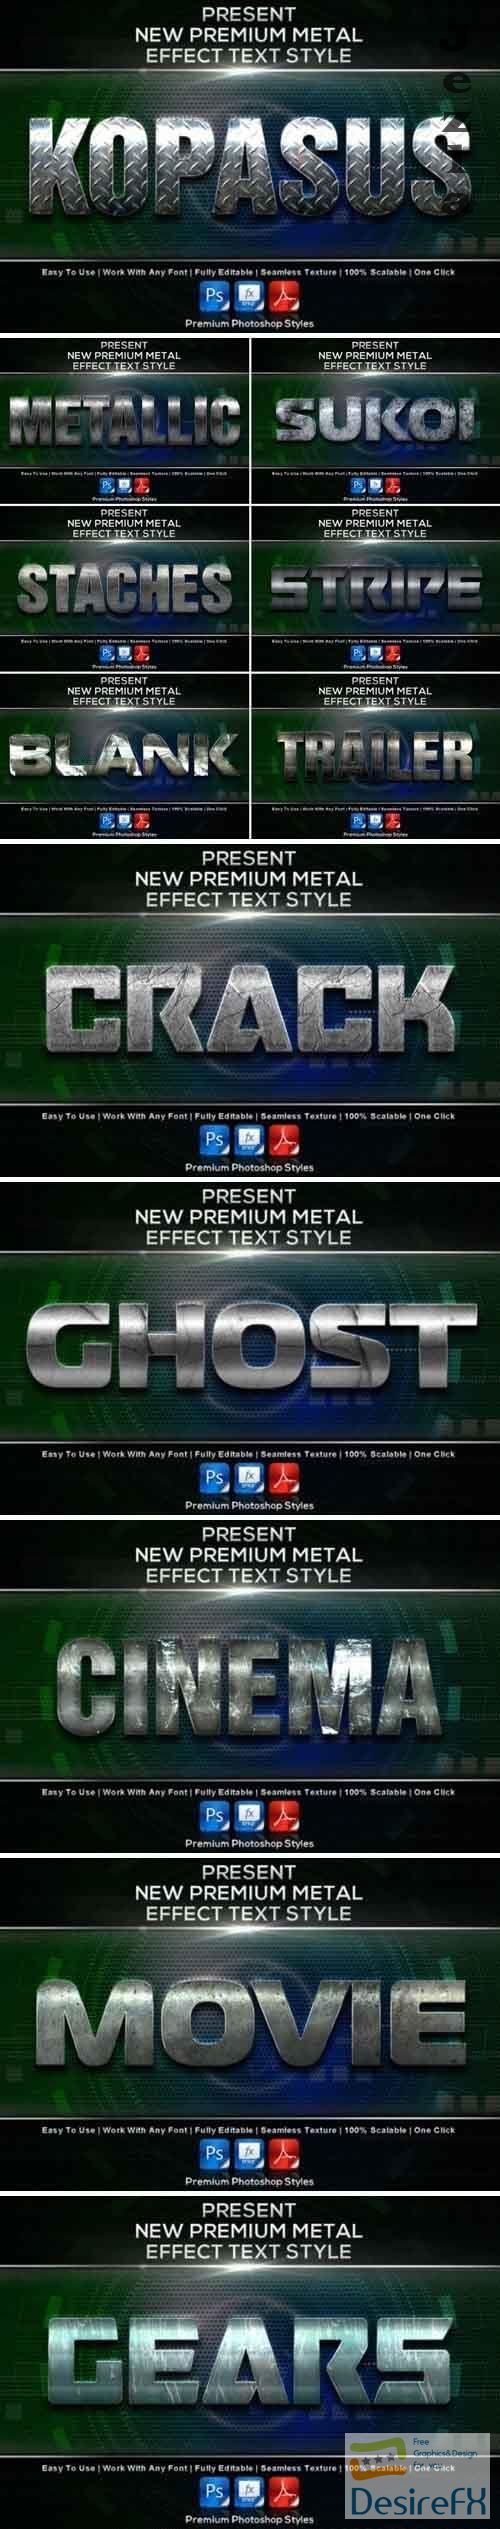 New Premium Metal Styles